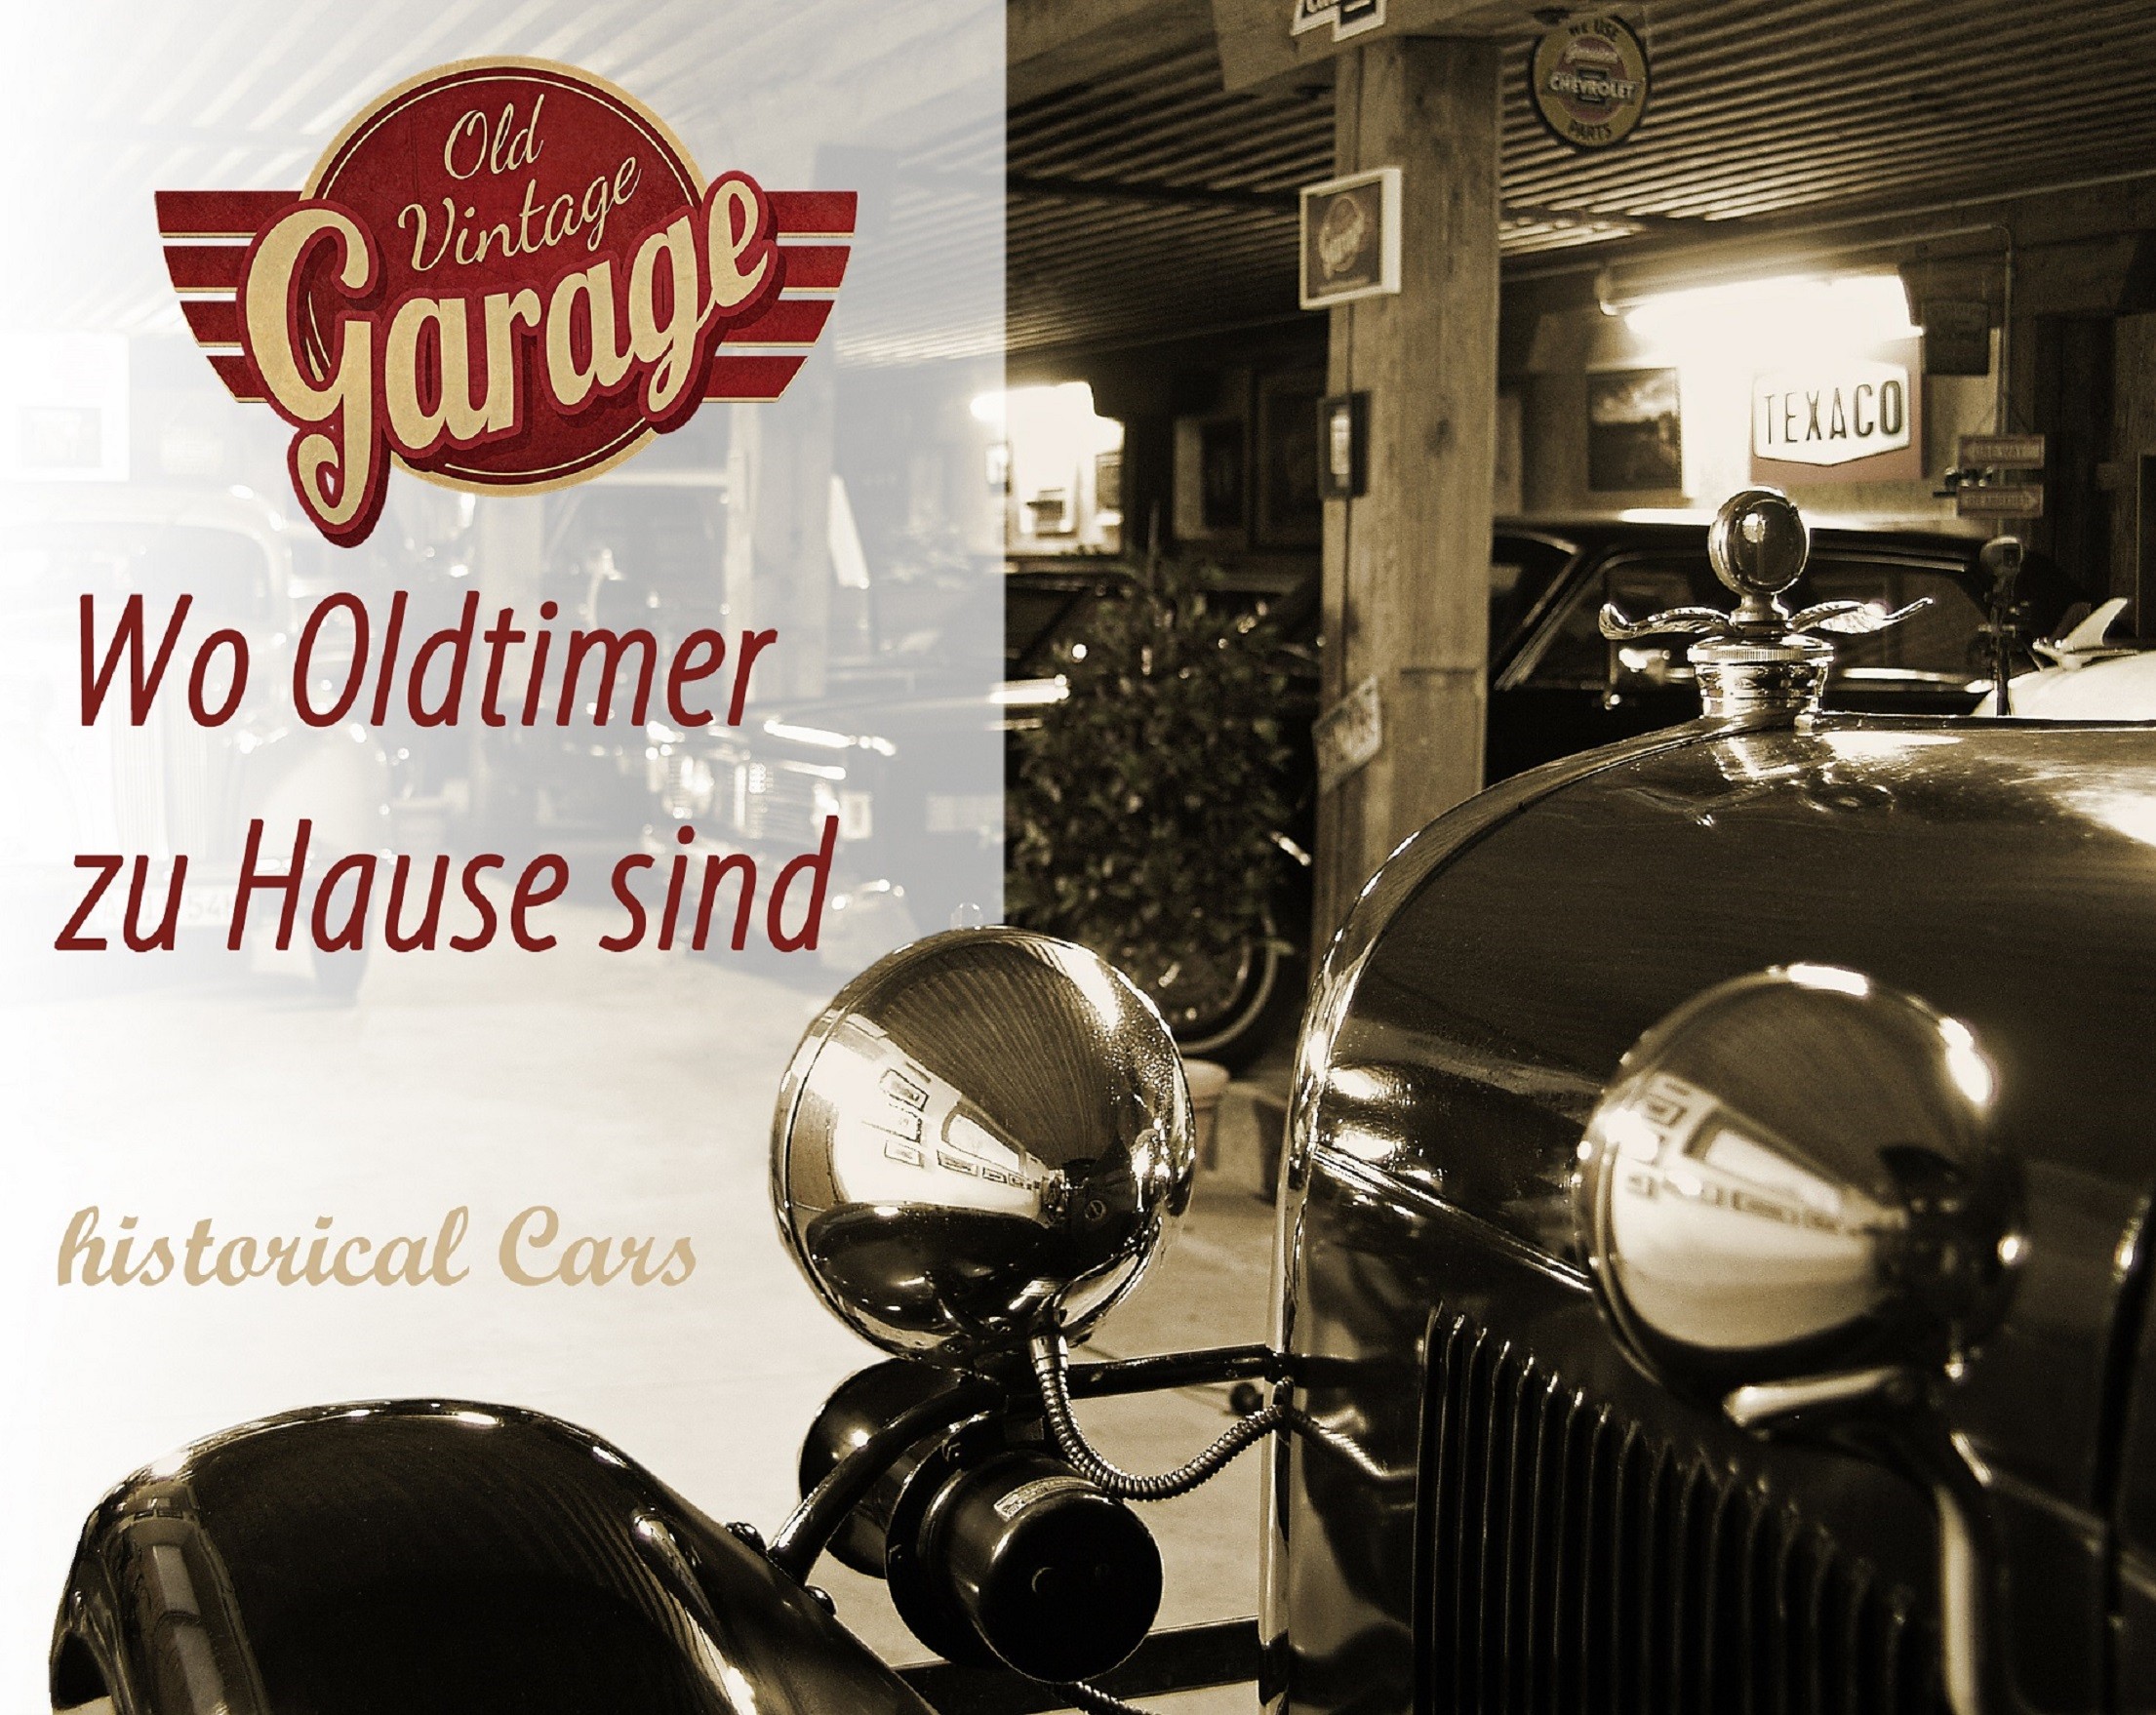 https://www.old-vintage-garage.de/fileadmin/Garage/Garage.203_old-vintage-garage_oldtimer_oldtimersammlung_vintage-cars-survivor_agawang_kutzenhausen_westliche-waelder.jpg